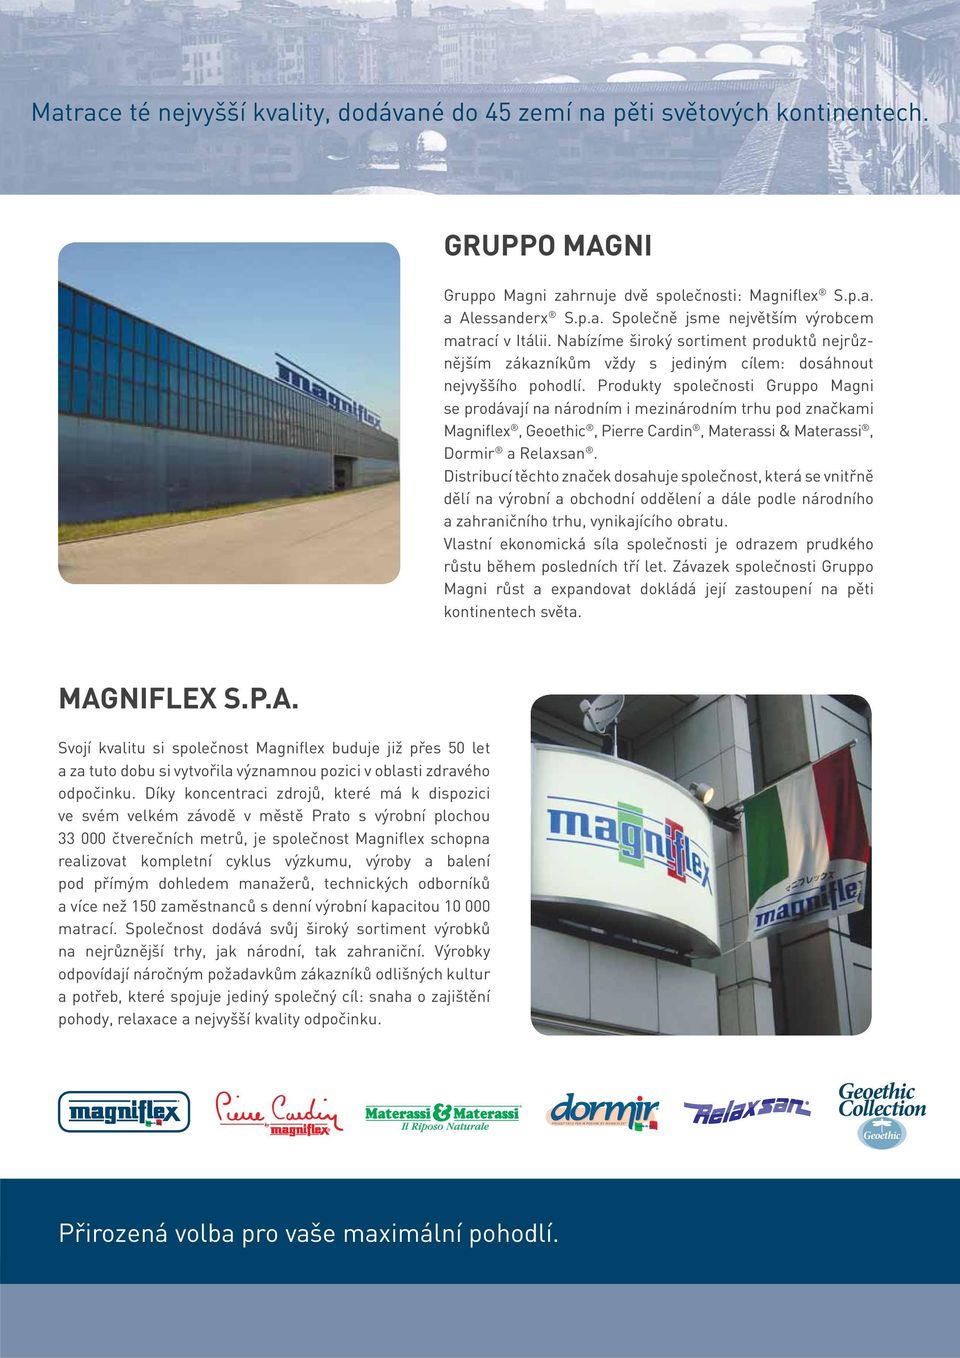 Produkty společnosti Gruppo Magni se prodávají na národním i mezinárodním trhu pod značkami Magniflex, Geoethic, Pierre Cardin, Materassi & Materassi, Dormir a Relaxsan.